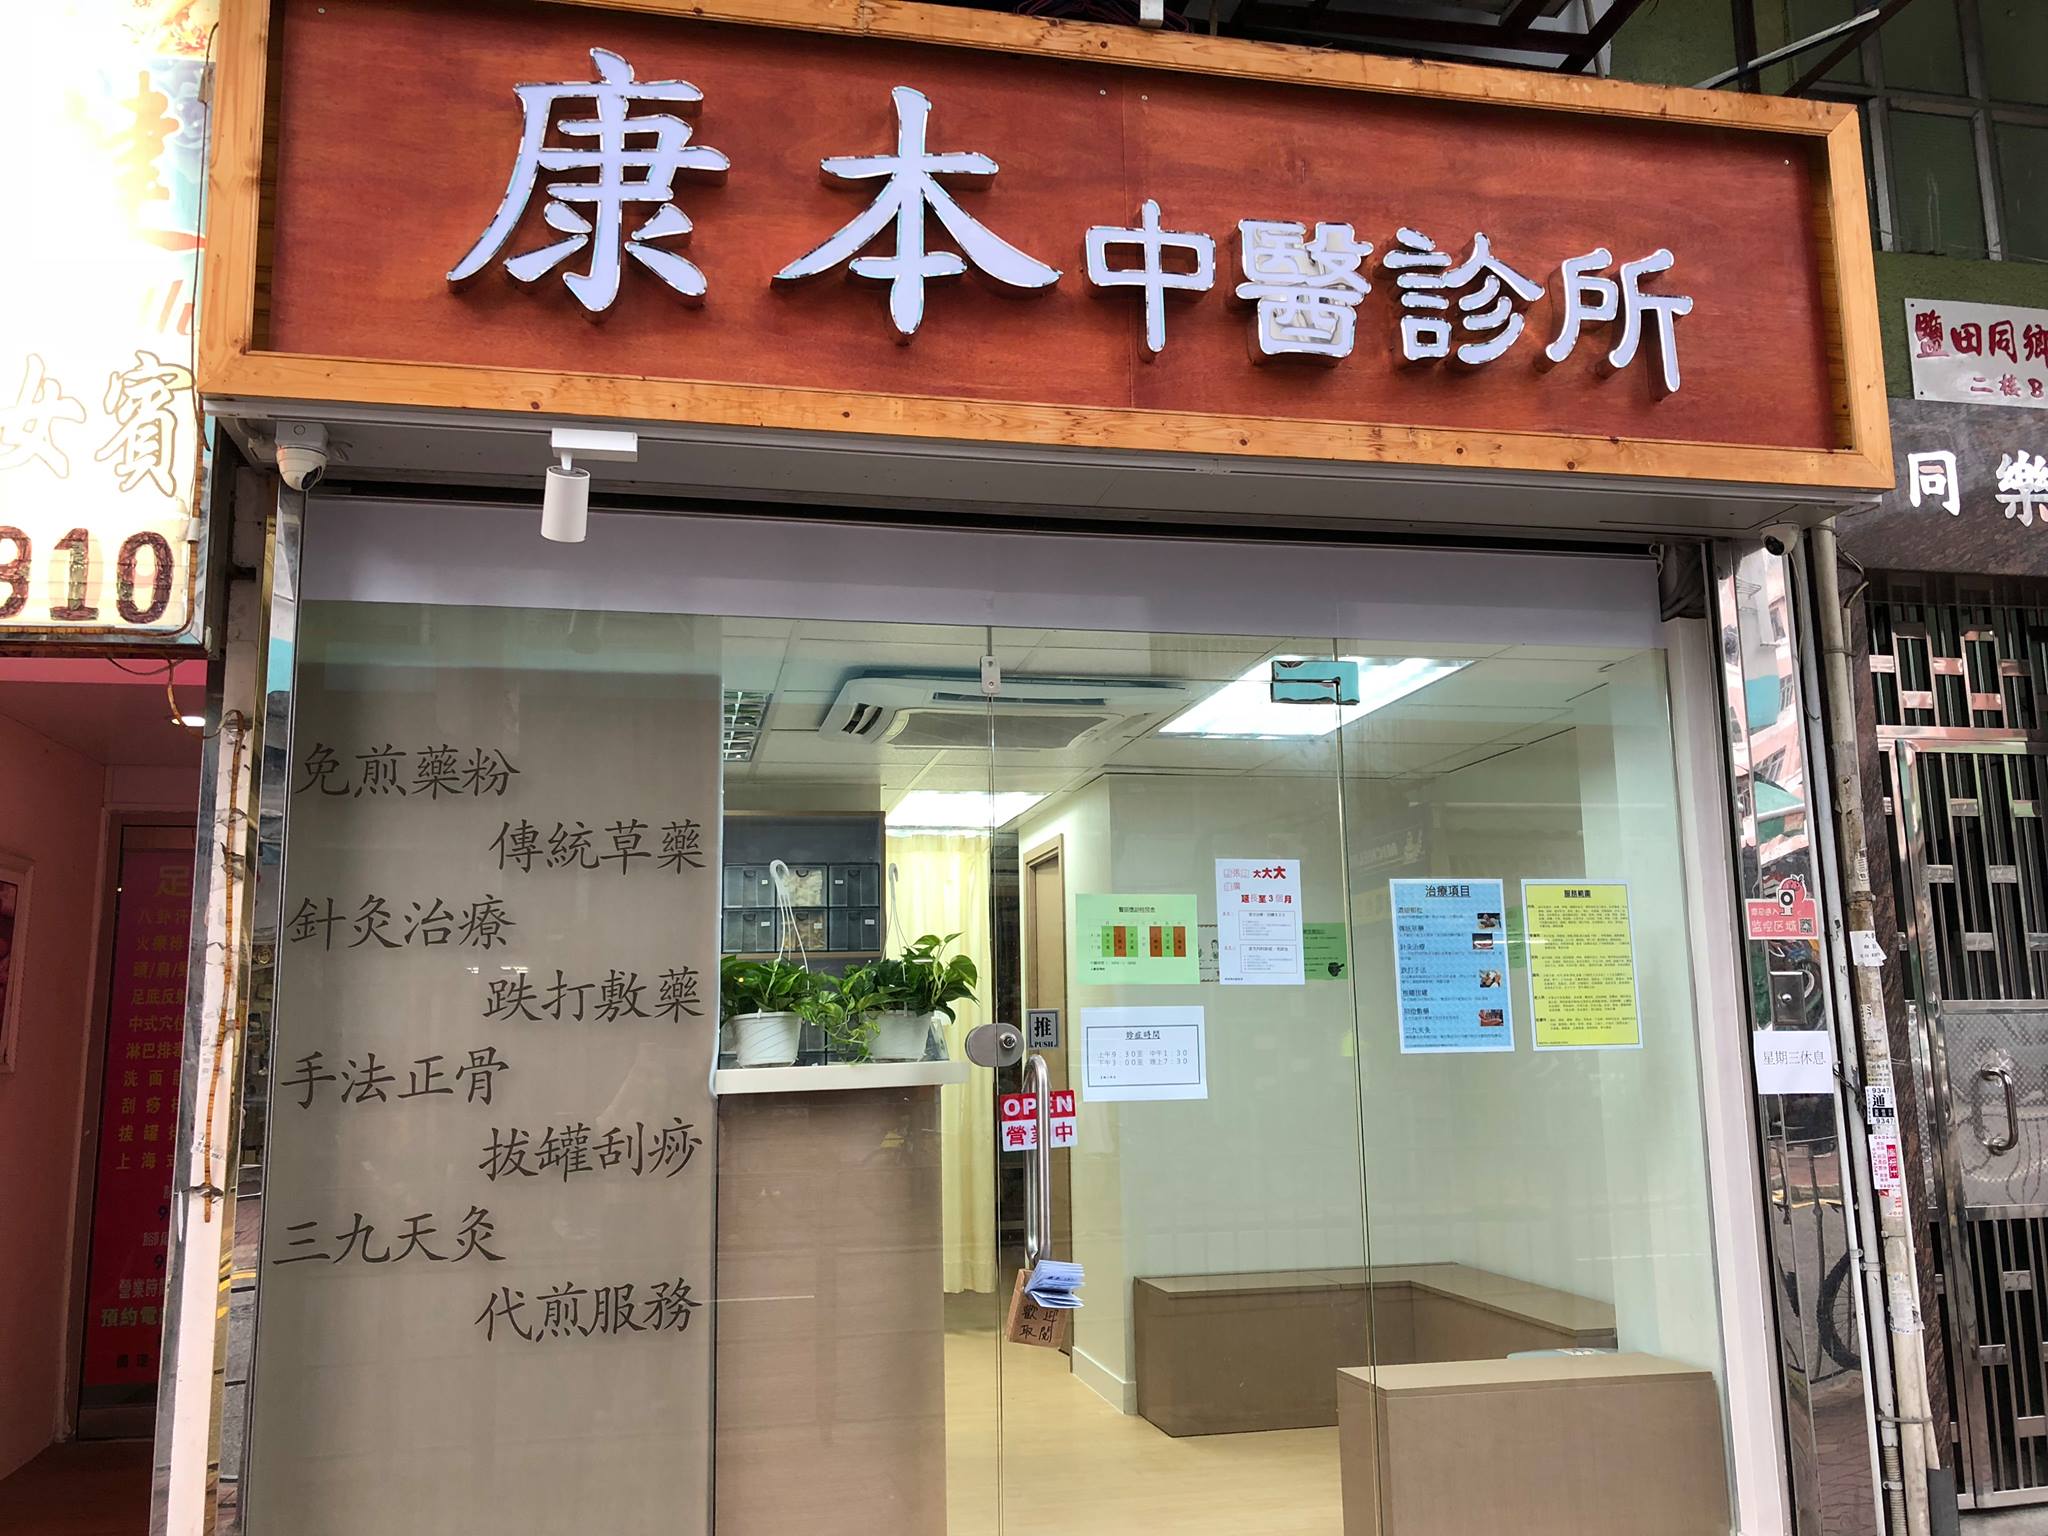 中医五官科: 康本中醫診所